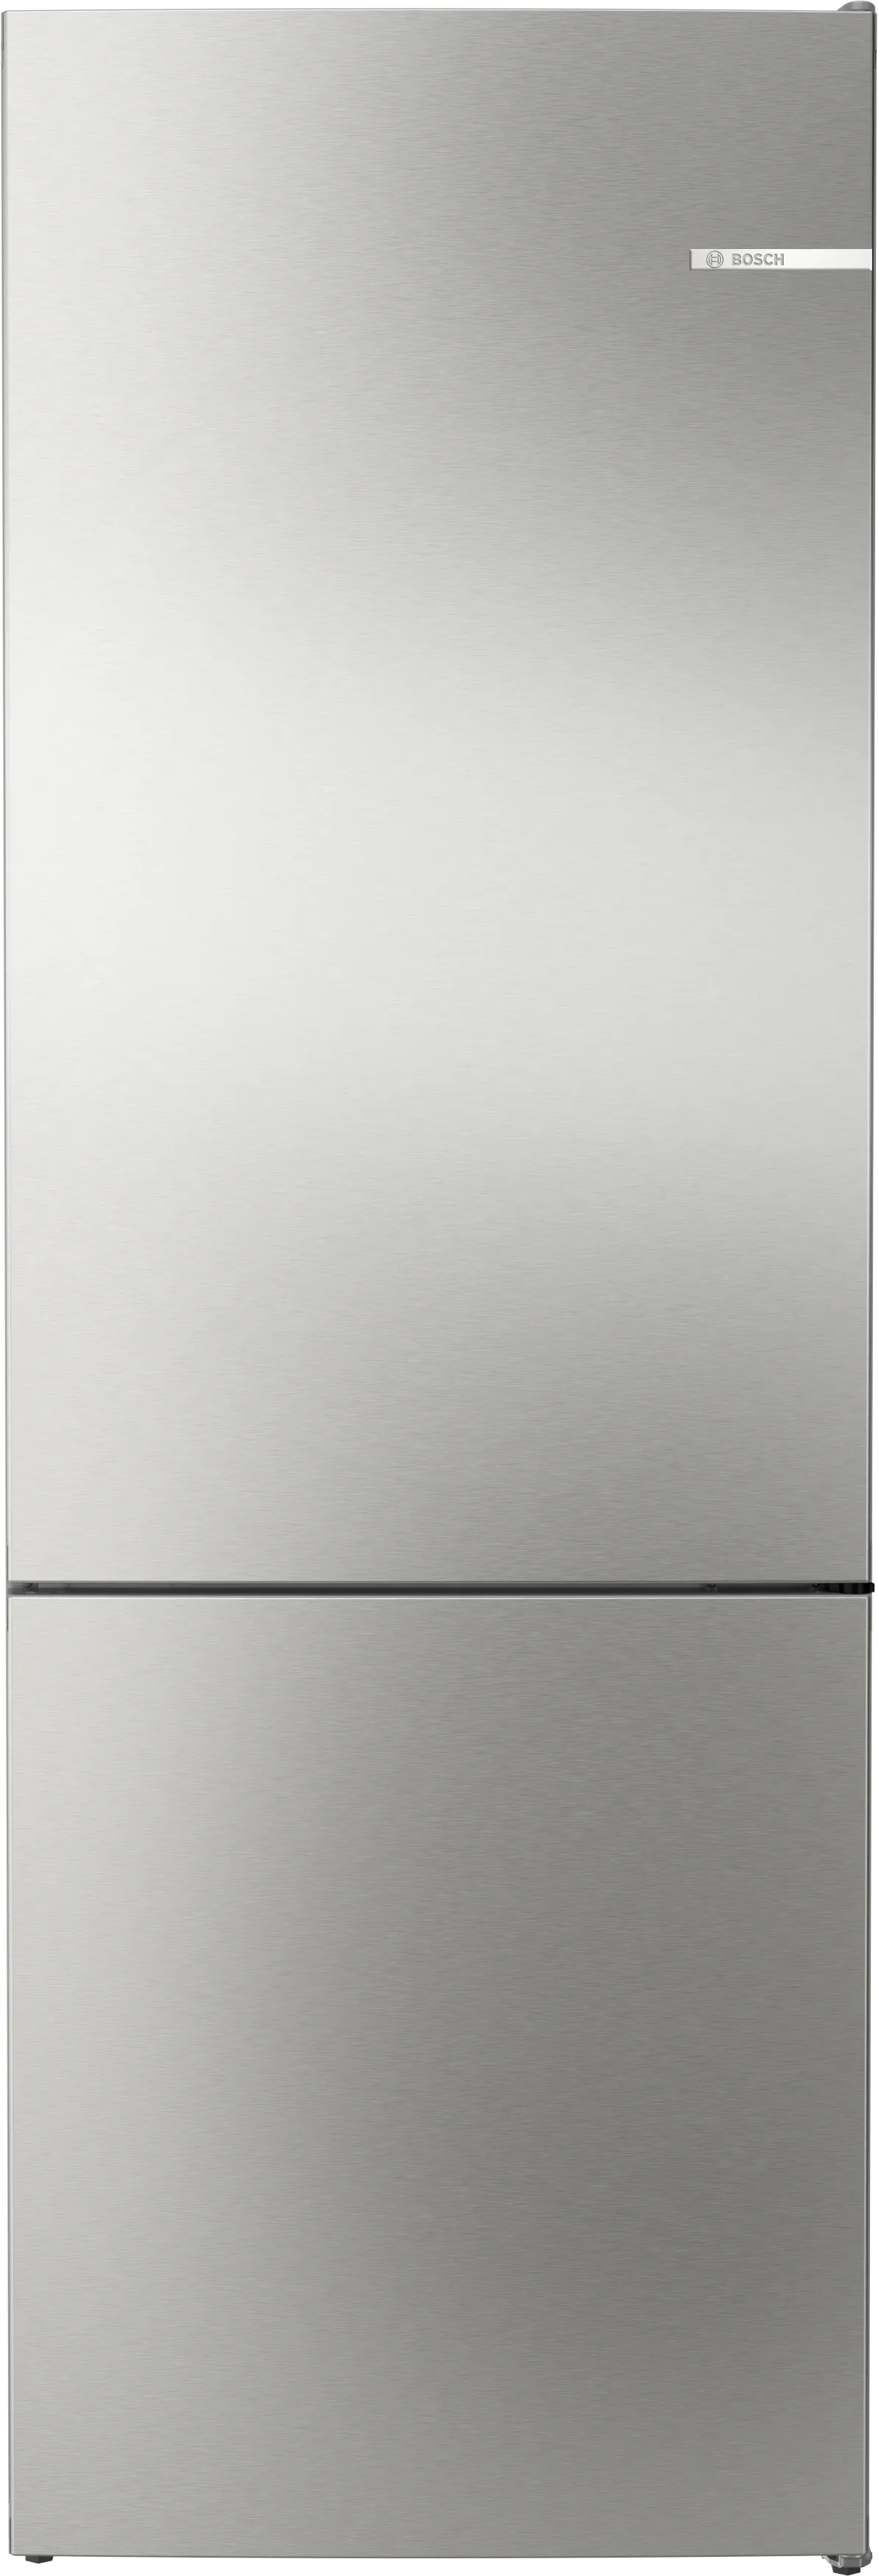 Serie 4 Volně stojící chladnička s mrazákem dole 203 x 70 cm Nerez (s povrchem proti otiskům prstů) 